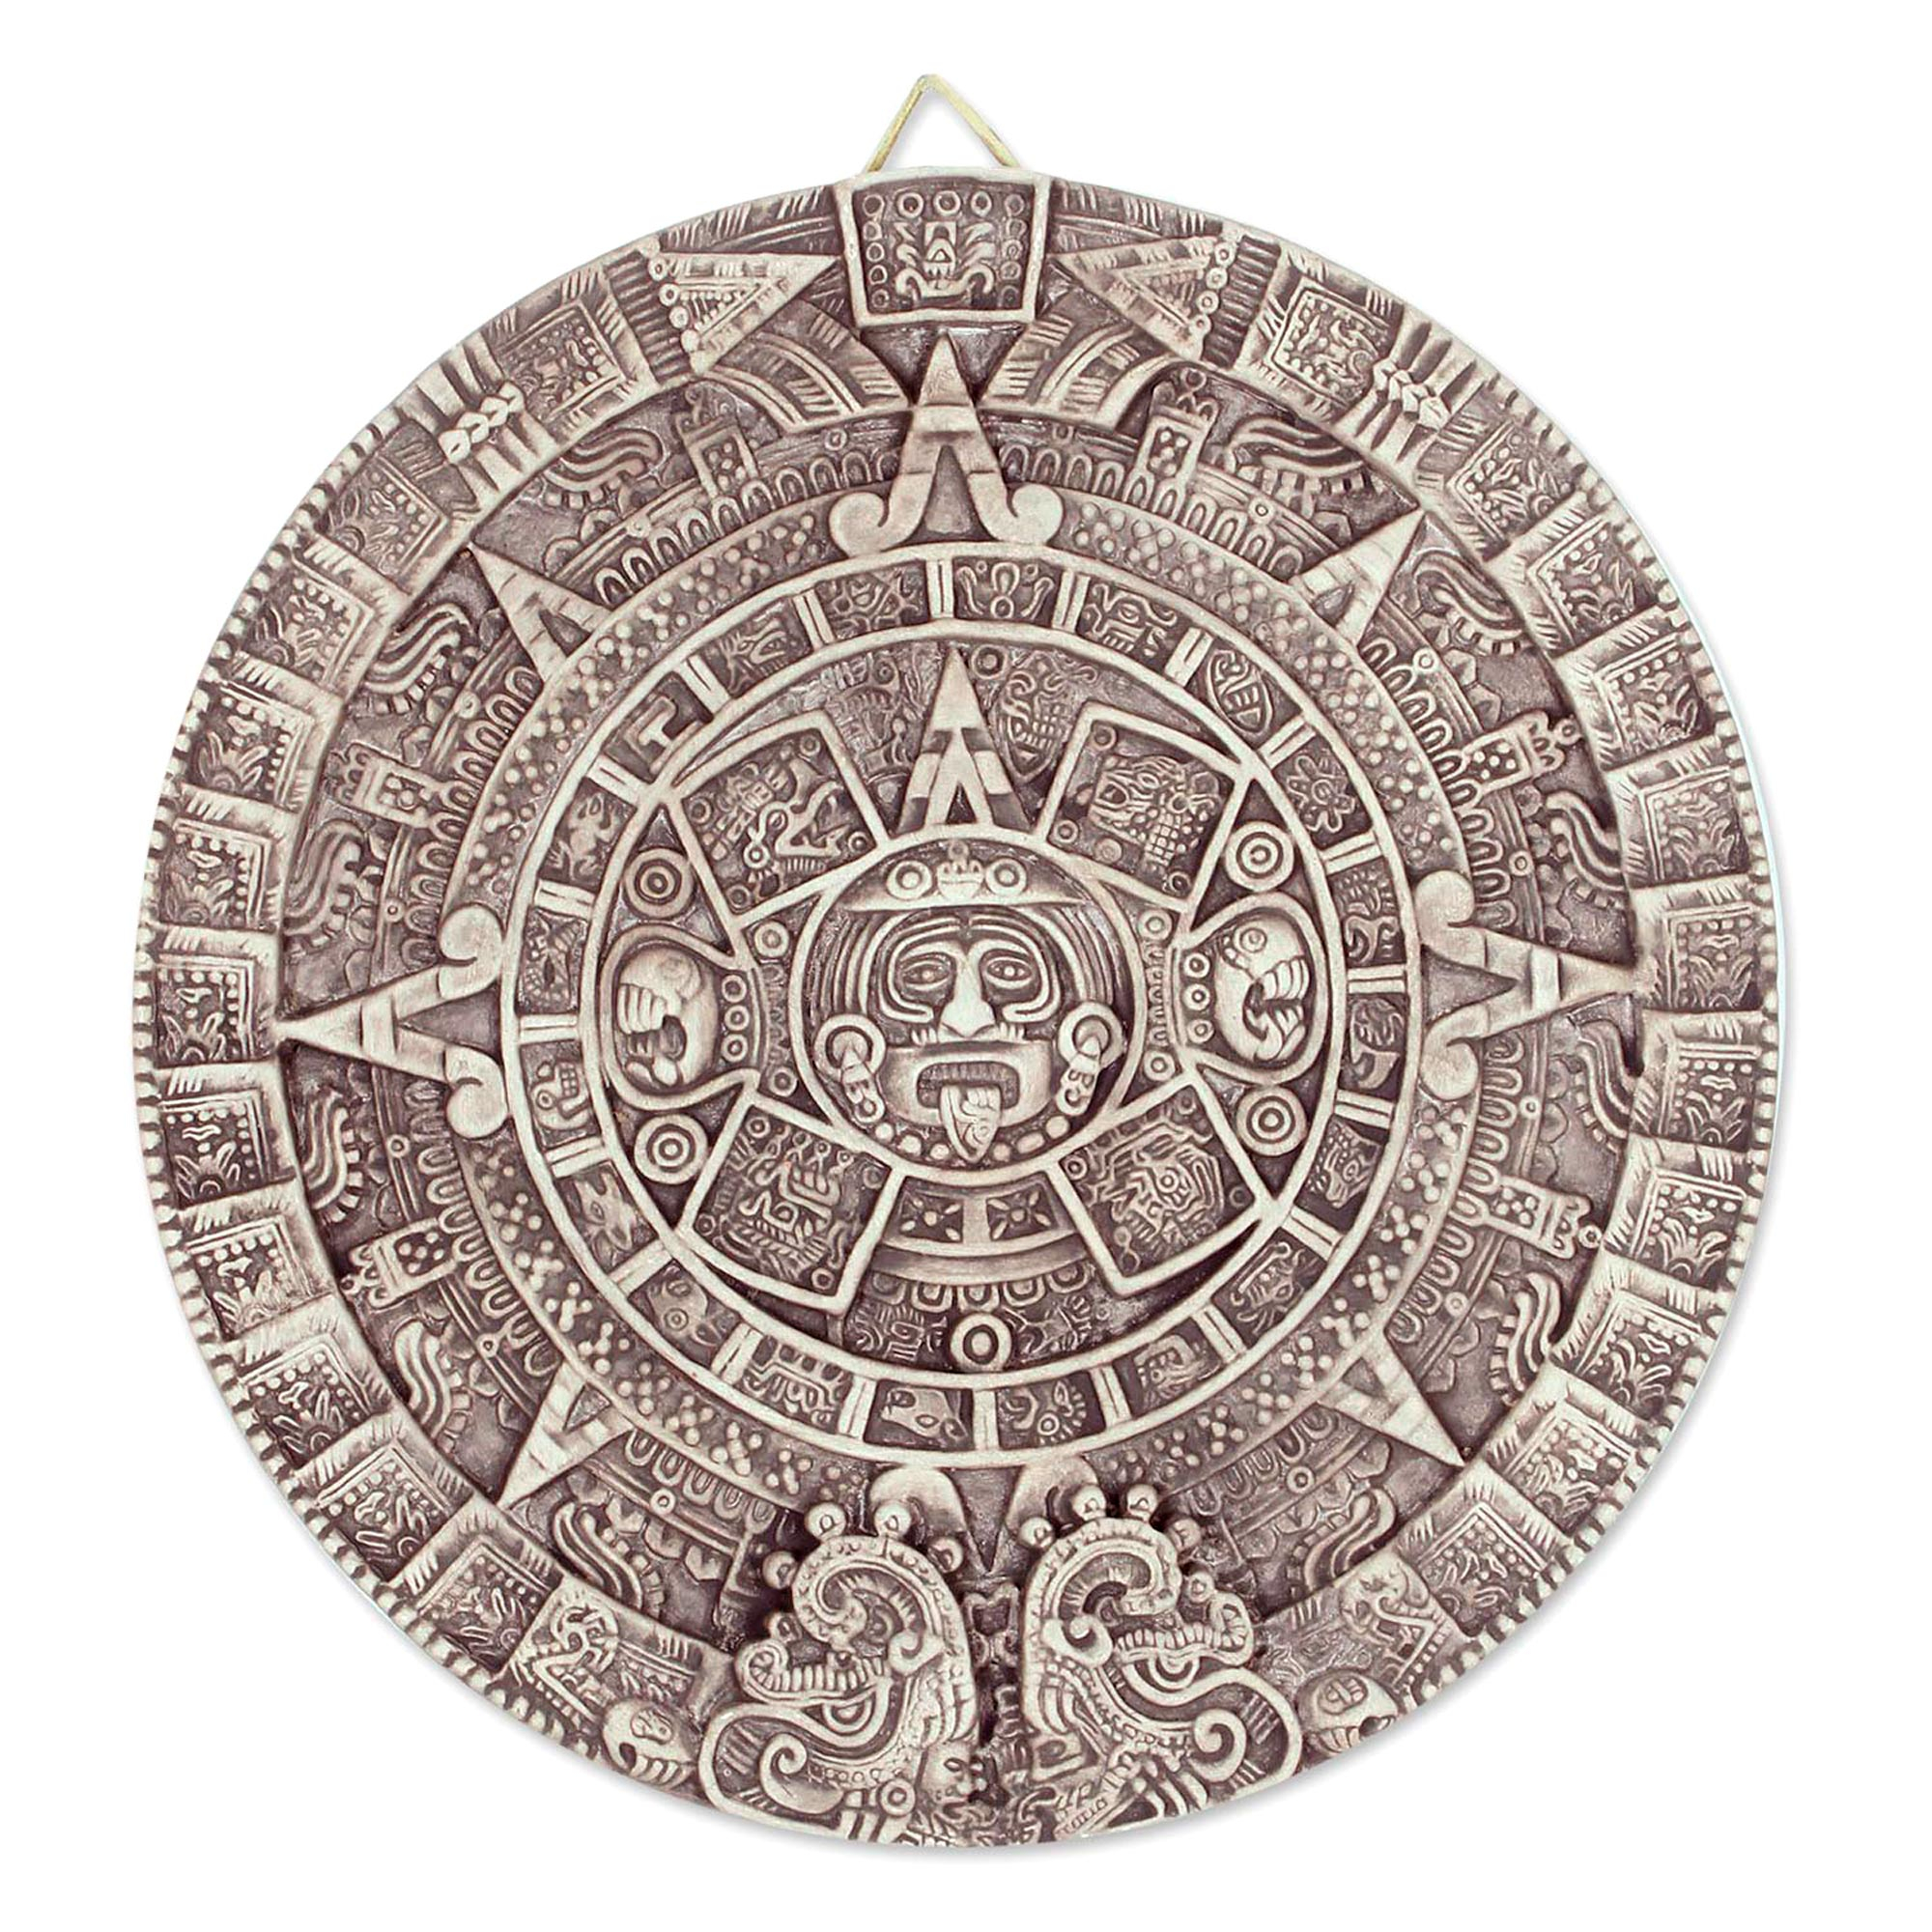 Календарь майя слушать полностью. Камень солнца ацтеков. Солнечный камень ацтеков. Камень солнца ацтеков музей Мехико. Солнечный камень древних ацтеков.